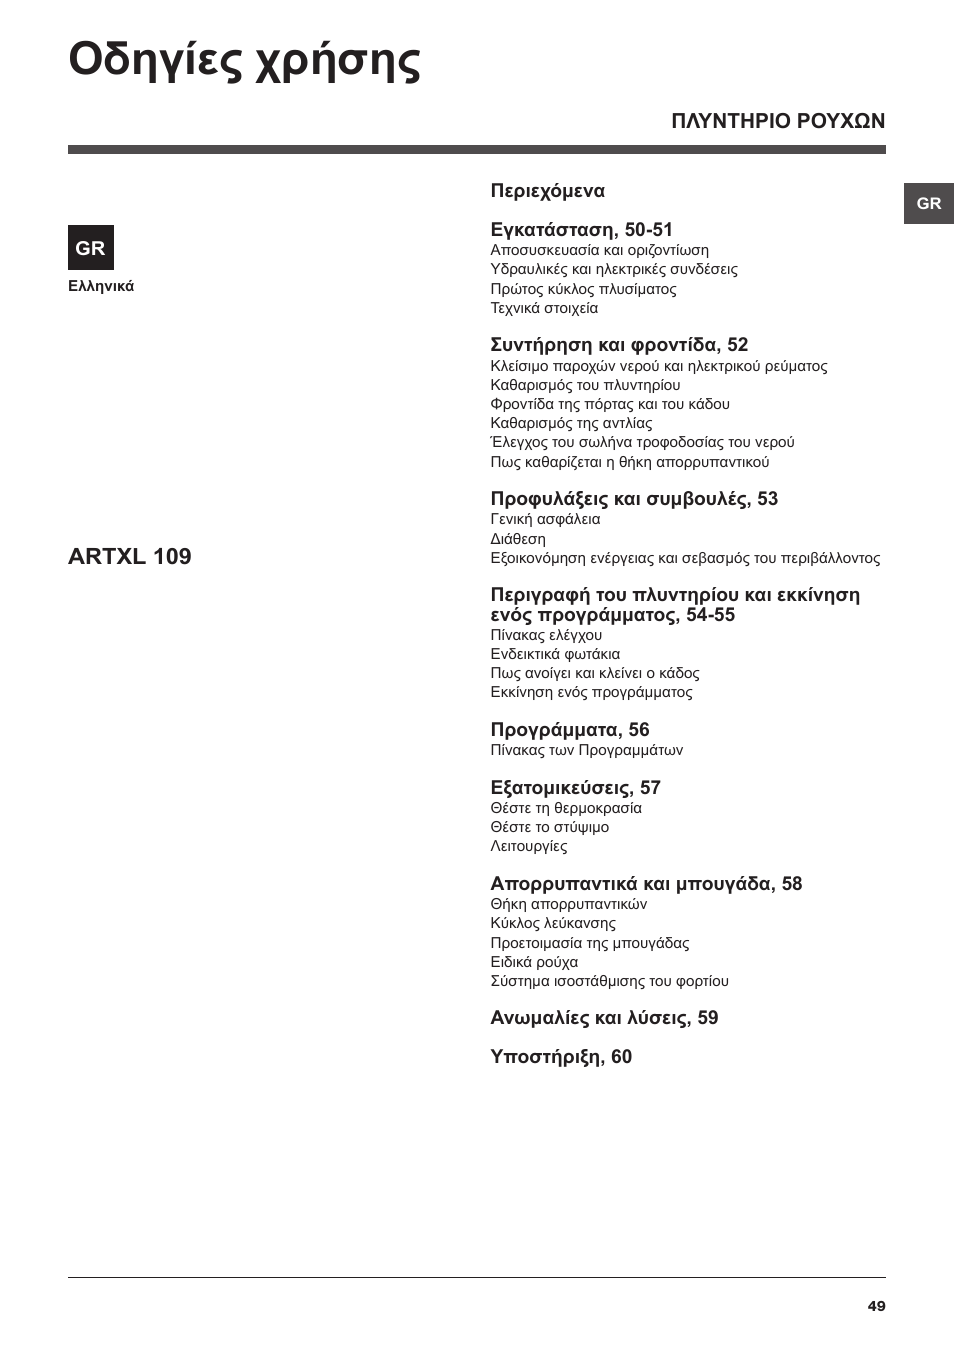 Οδηγίες χρήσης, Artxl 109 | Hotpoint Ariston ARTXL 109 User Manual | Page  49 / 72 | Original mode